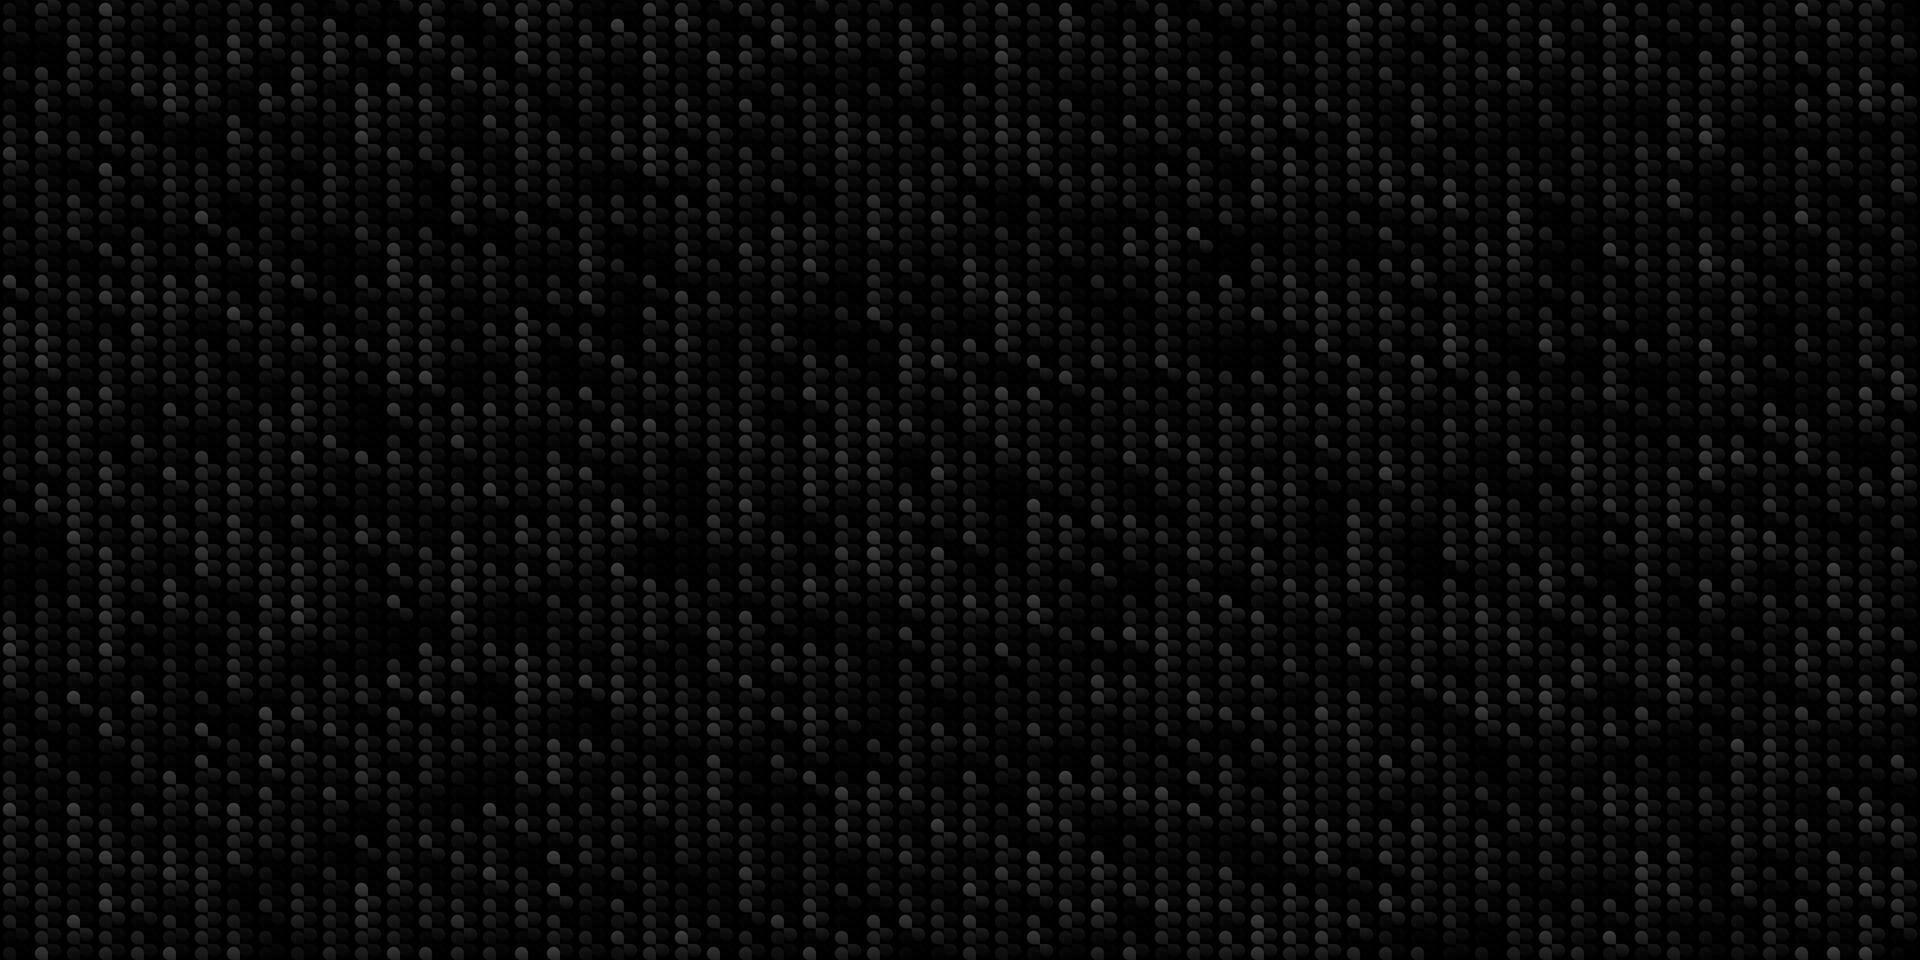 monochrome foncé géométrique la grille Contexte moderne foncé noir abstrait bruit texture vecteur